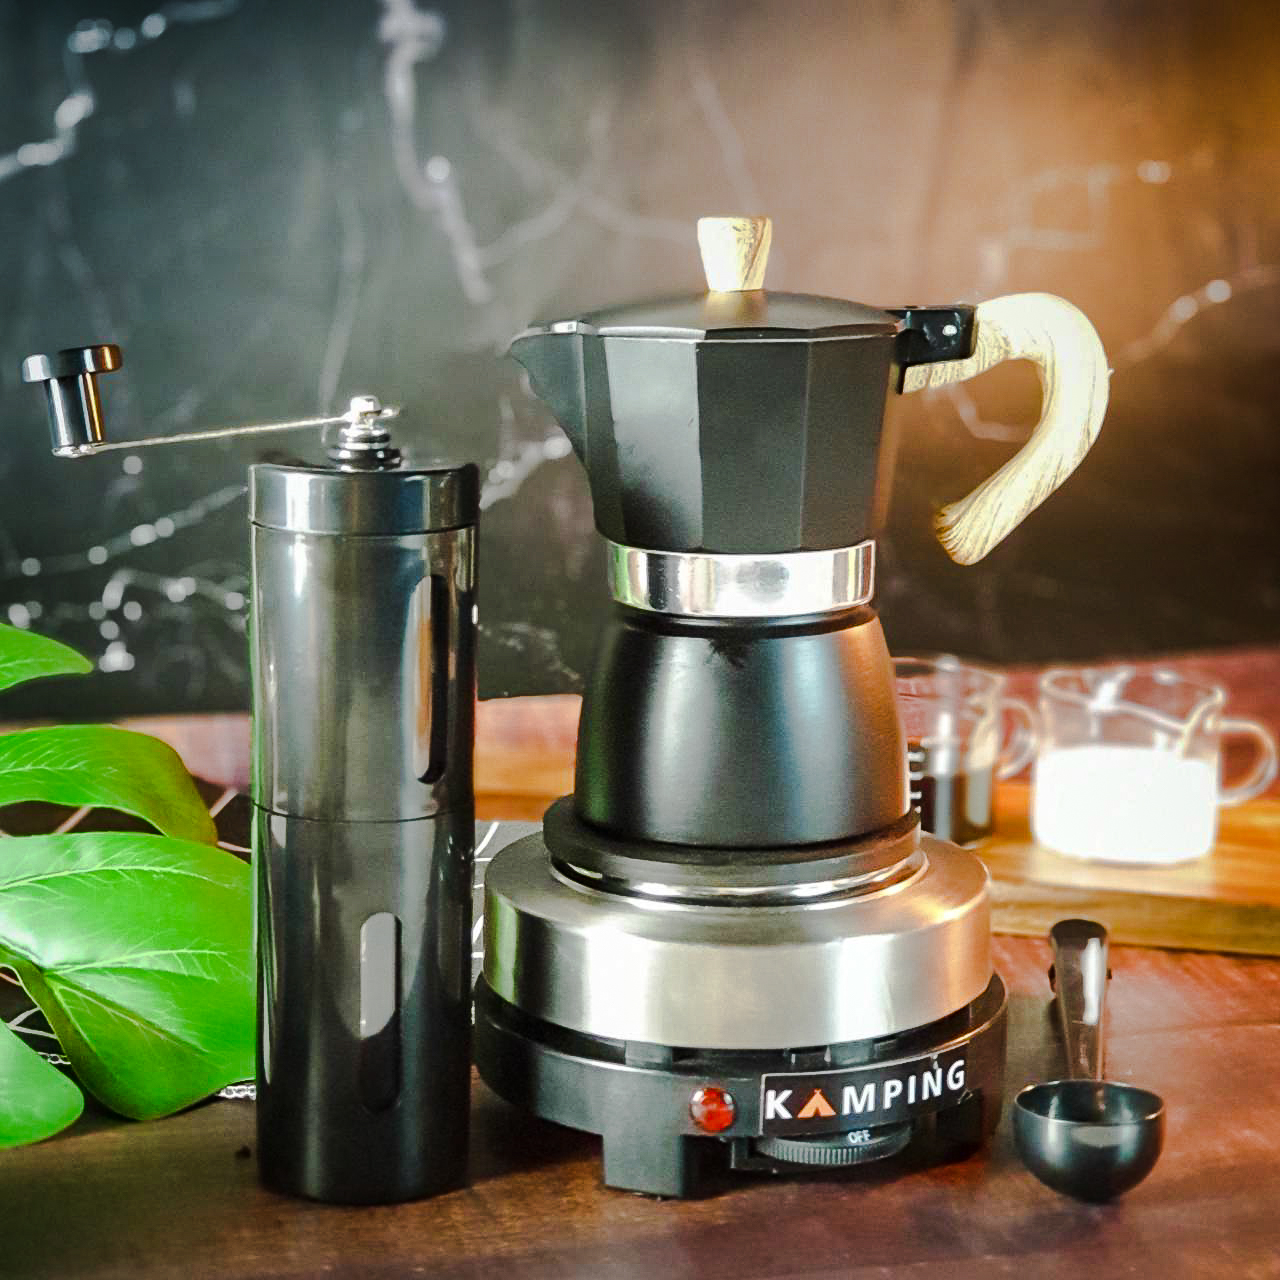 KAMPING (4 ชิ้น/ดำ)หม้อต้มกาแฟสด มอคค่าพอท moka pot + เตาไฟฟ้ามินิ 500W + เครื่องบดมือหมุน + 2-1 ช้อนตักกาแฟ